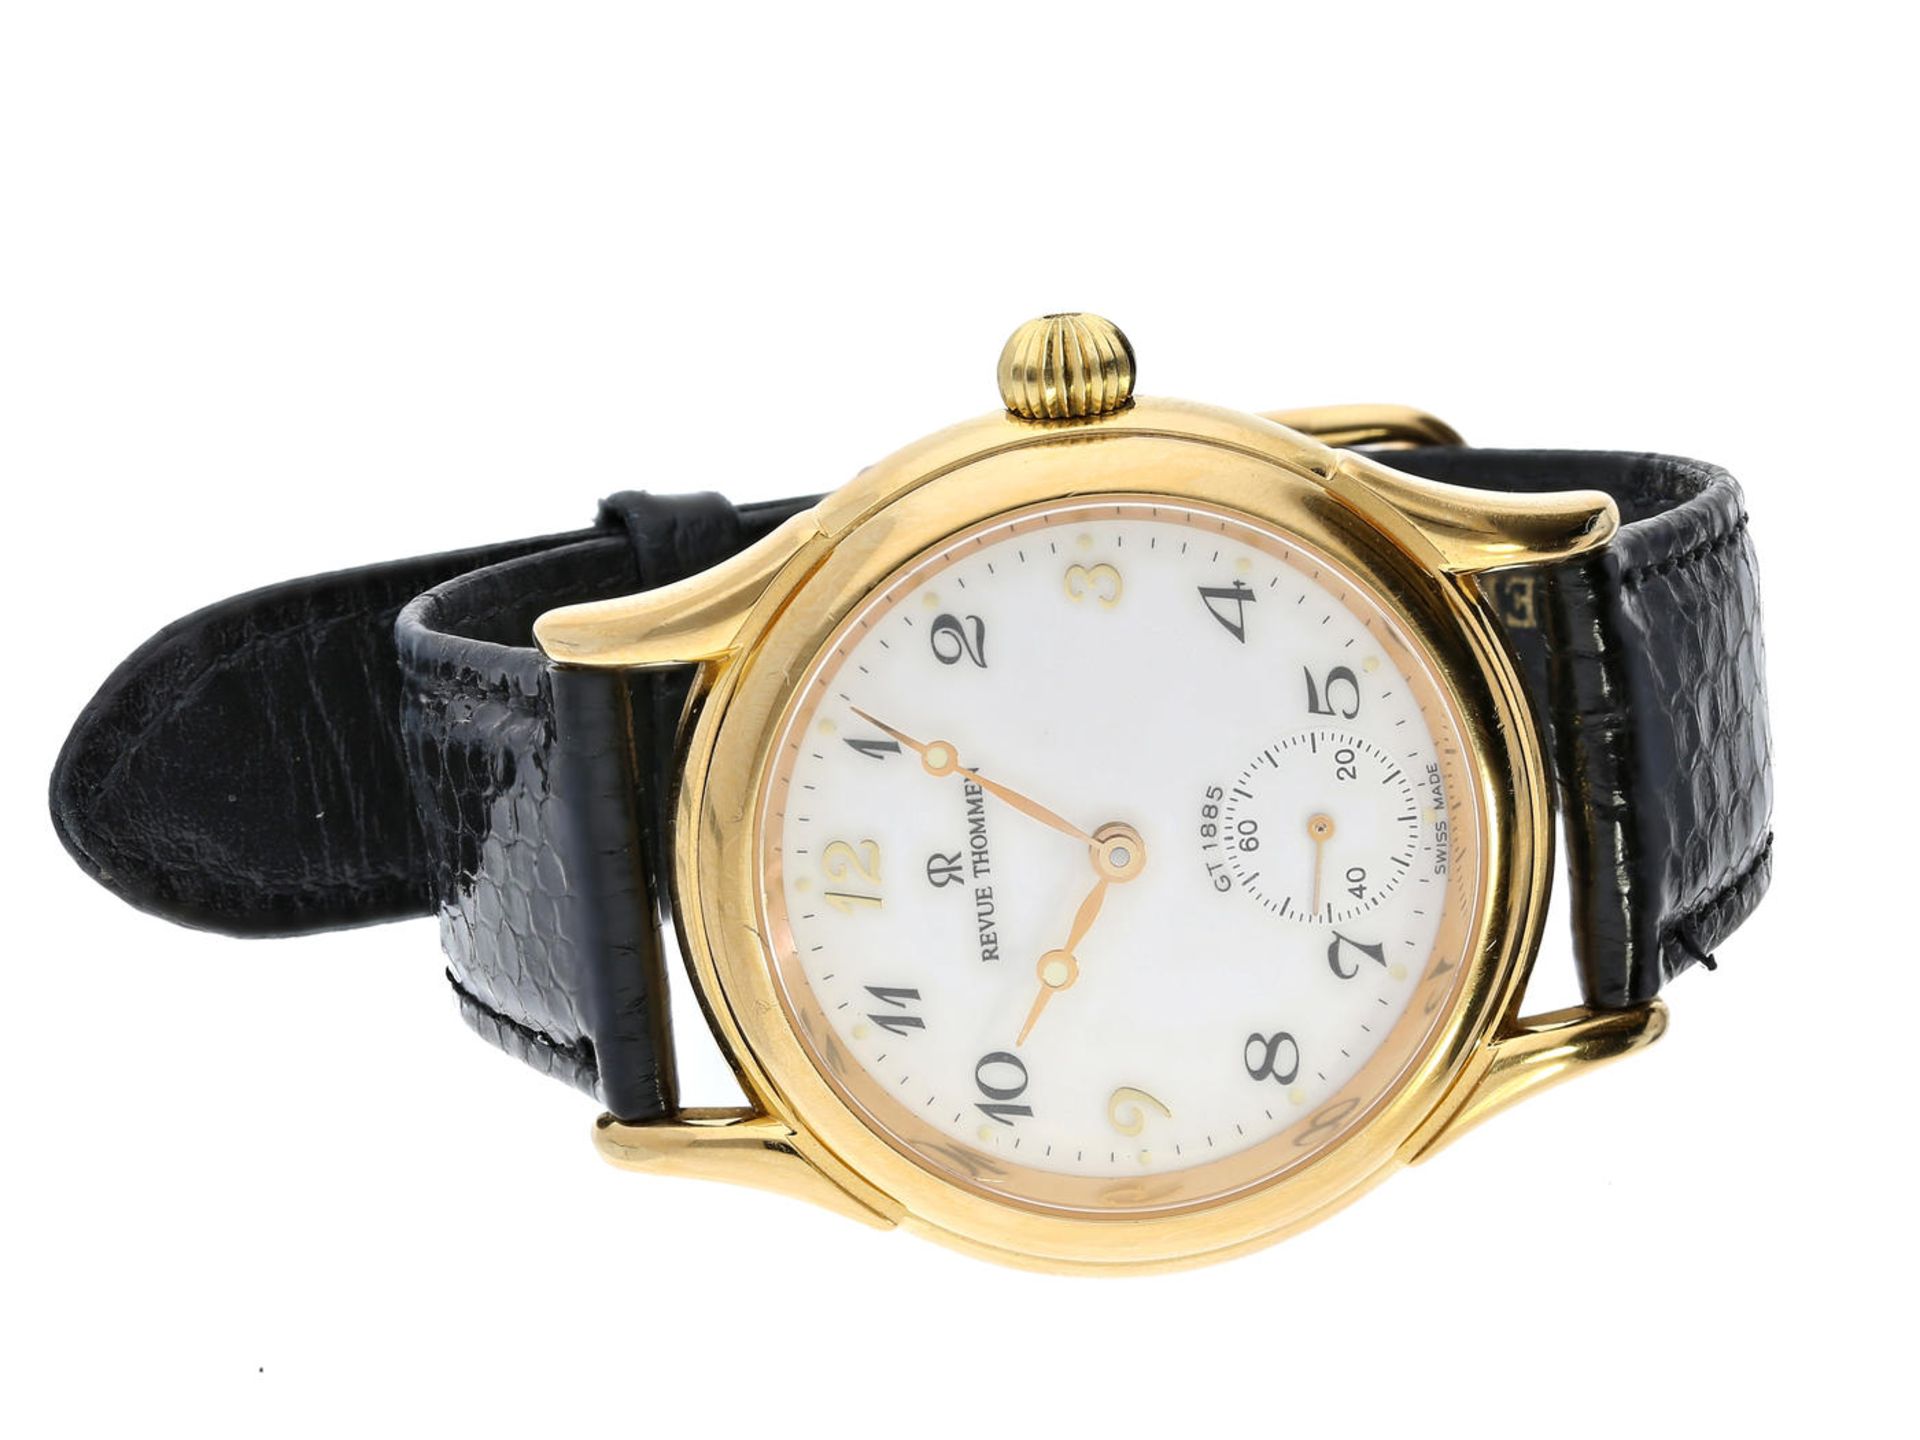 Armbanduhr: Schweizer Herrenuhr der Marke Revue Thommen "Classical" Handaufzug GT1885, um 2000 Ca.